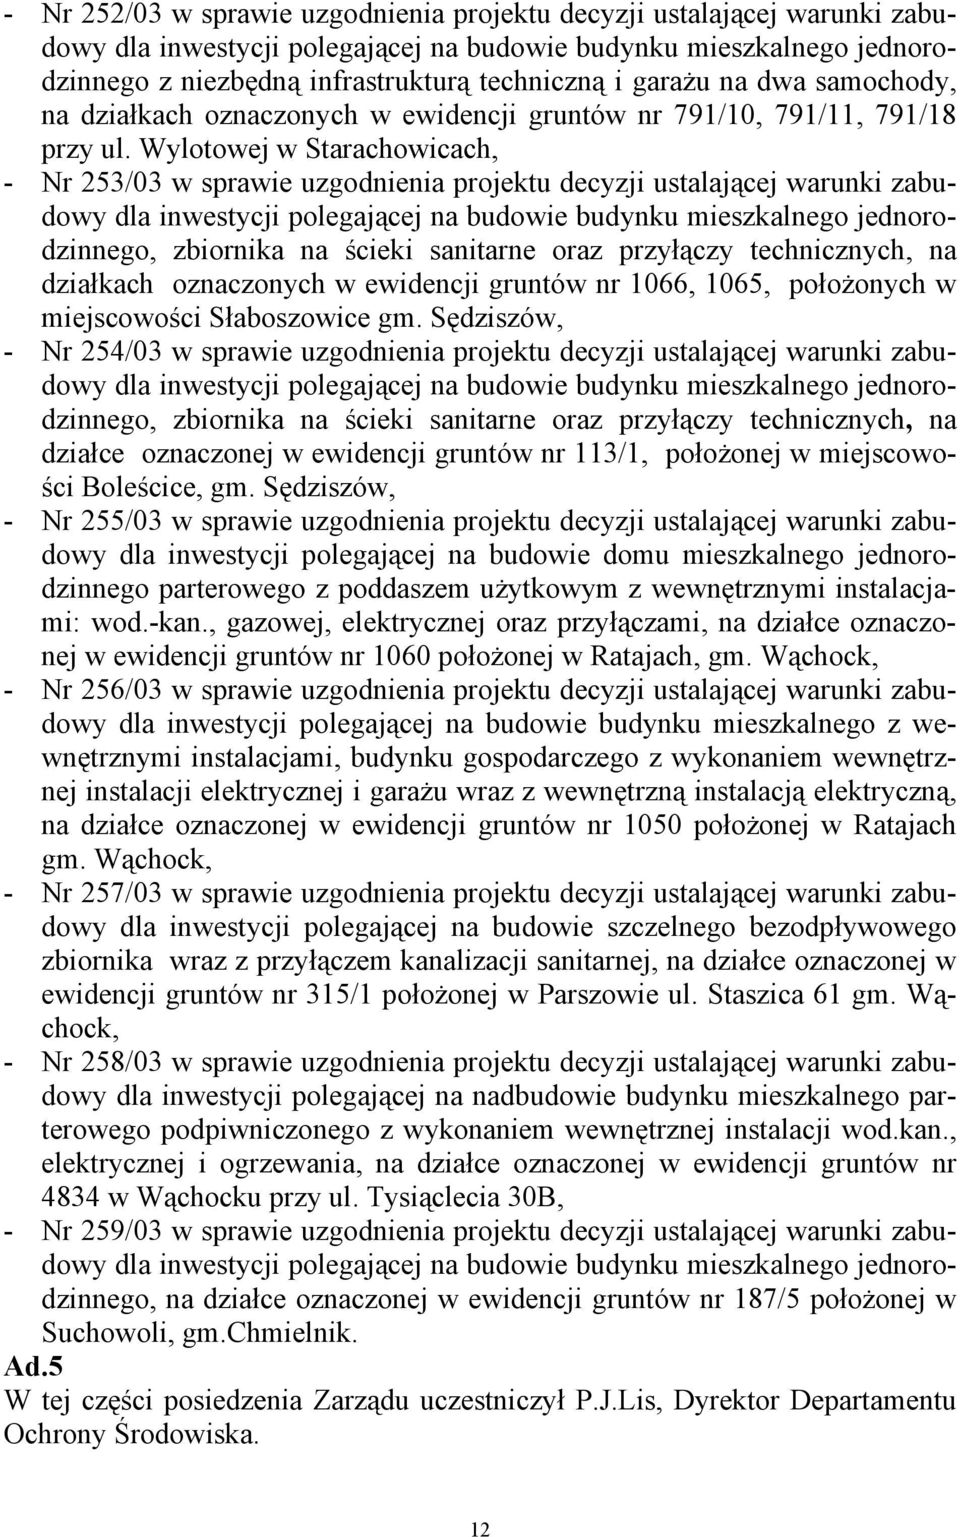 Wylotowej w Starachowicach, - Nr 253/03 w sprawie uzgodnienia projektu decyzji ustalającej warunki zabudowy, zbiornika na ścieki sanitarne oraz przyłączy technicznych, na działkach oznaczonych w